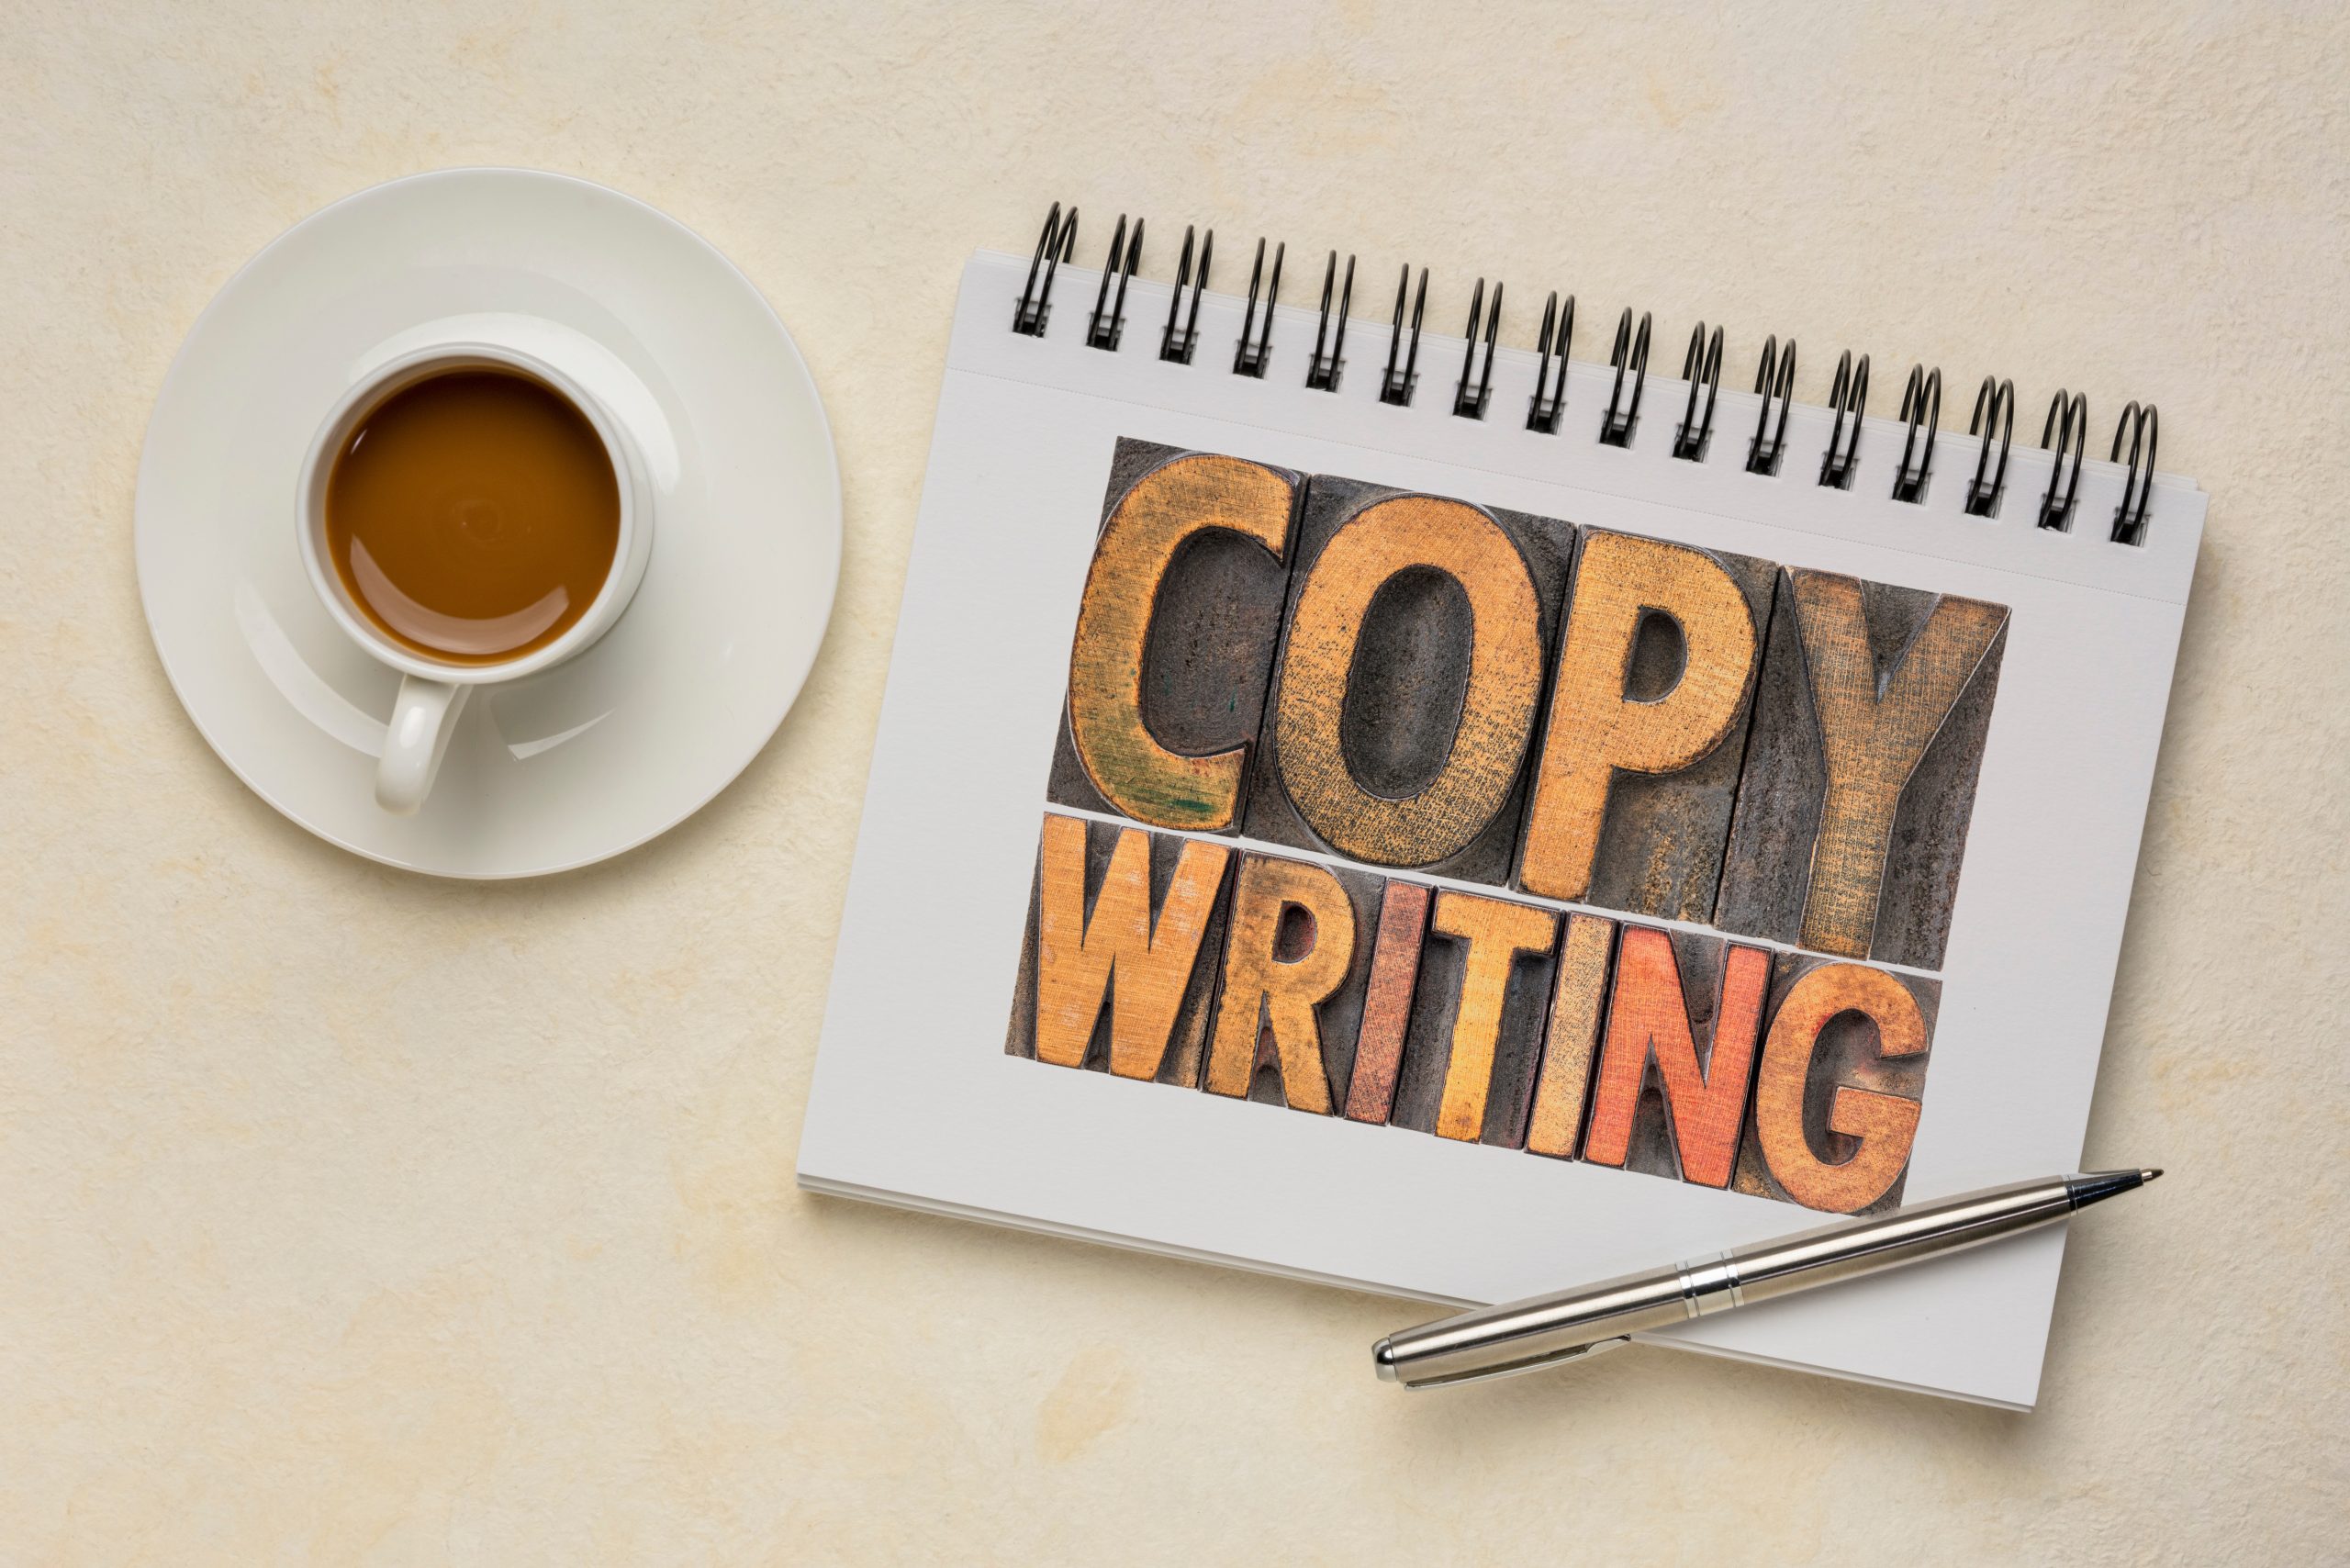 Técnicas de copywriting persuasivo: como escrever textos que convertem